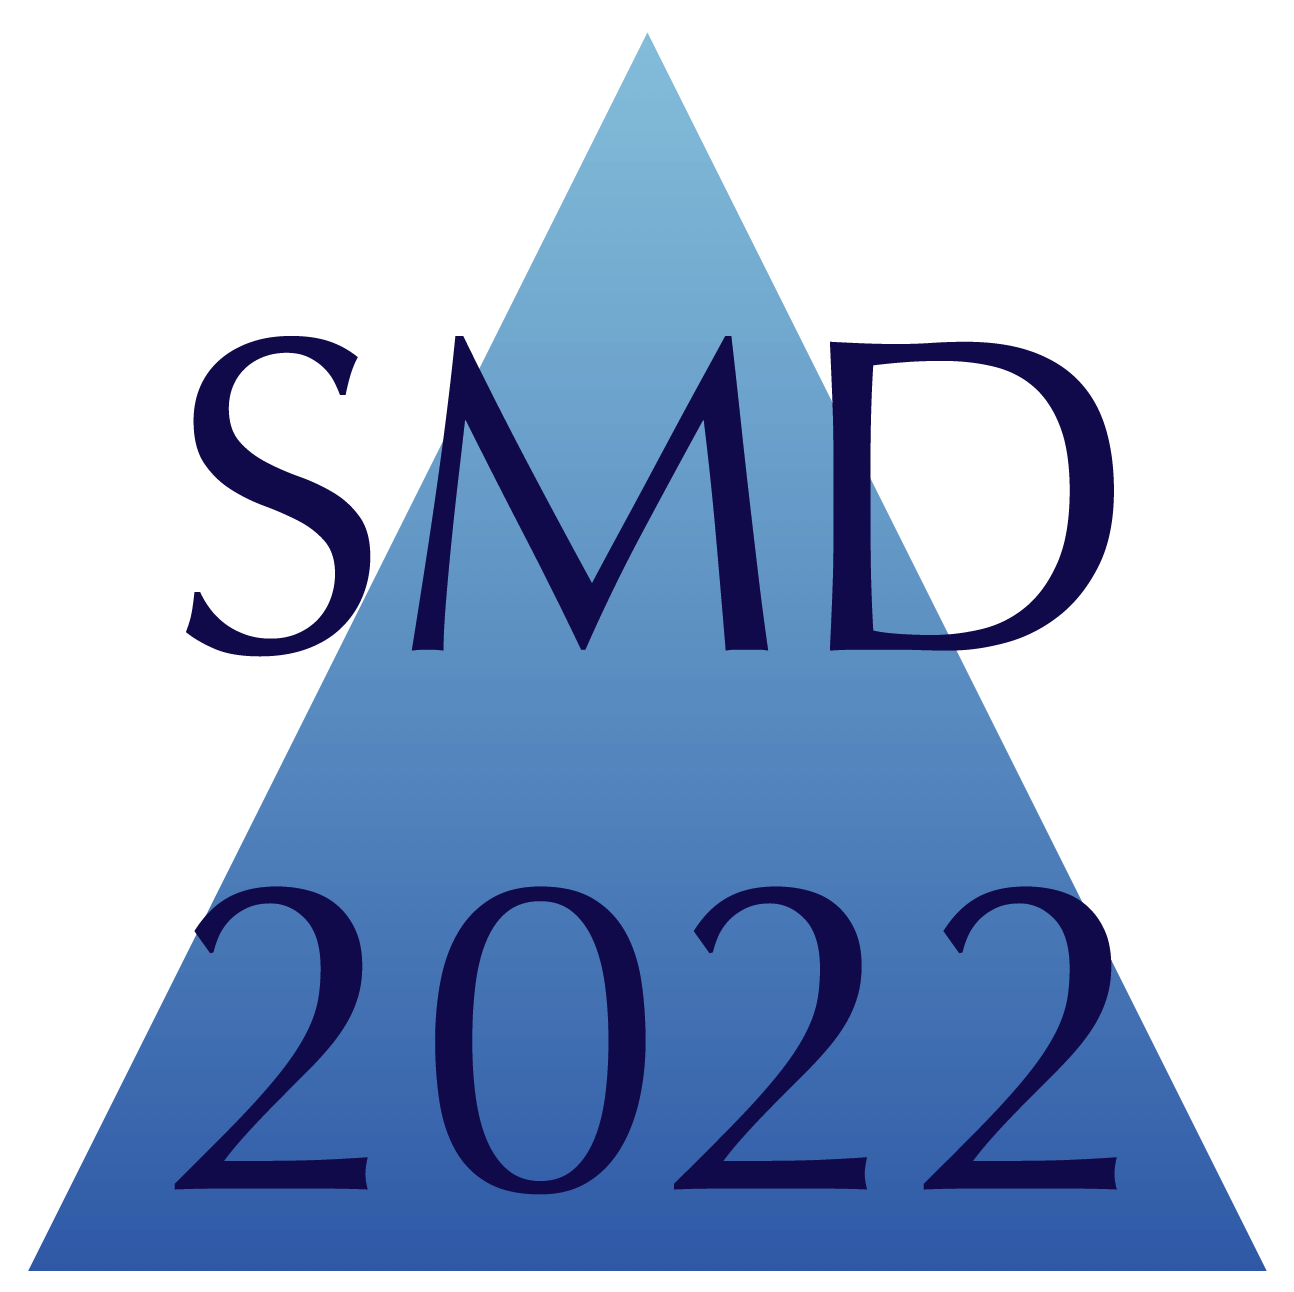 SMD 2022 Conference Registration